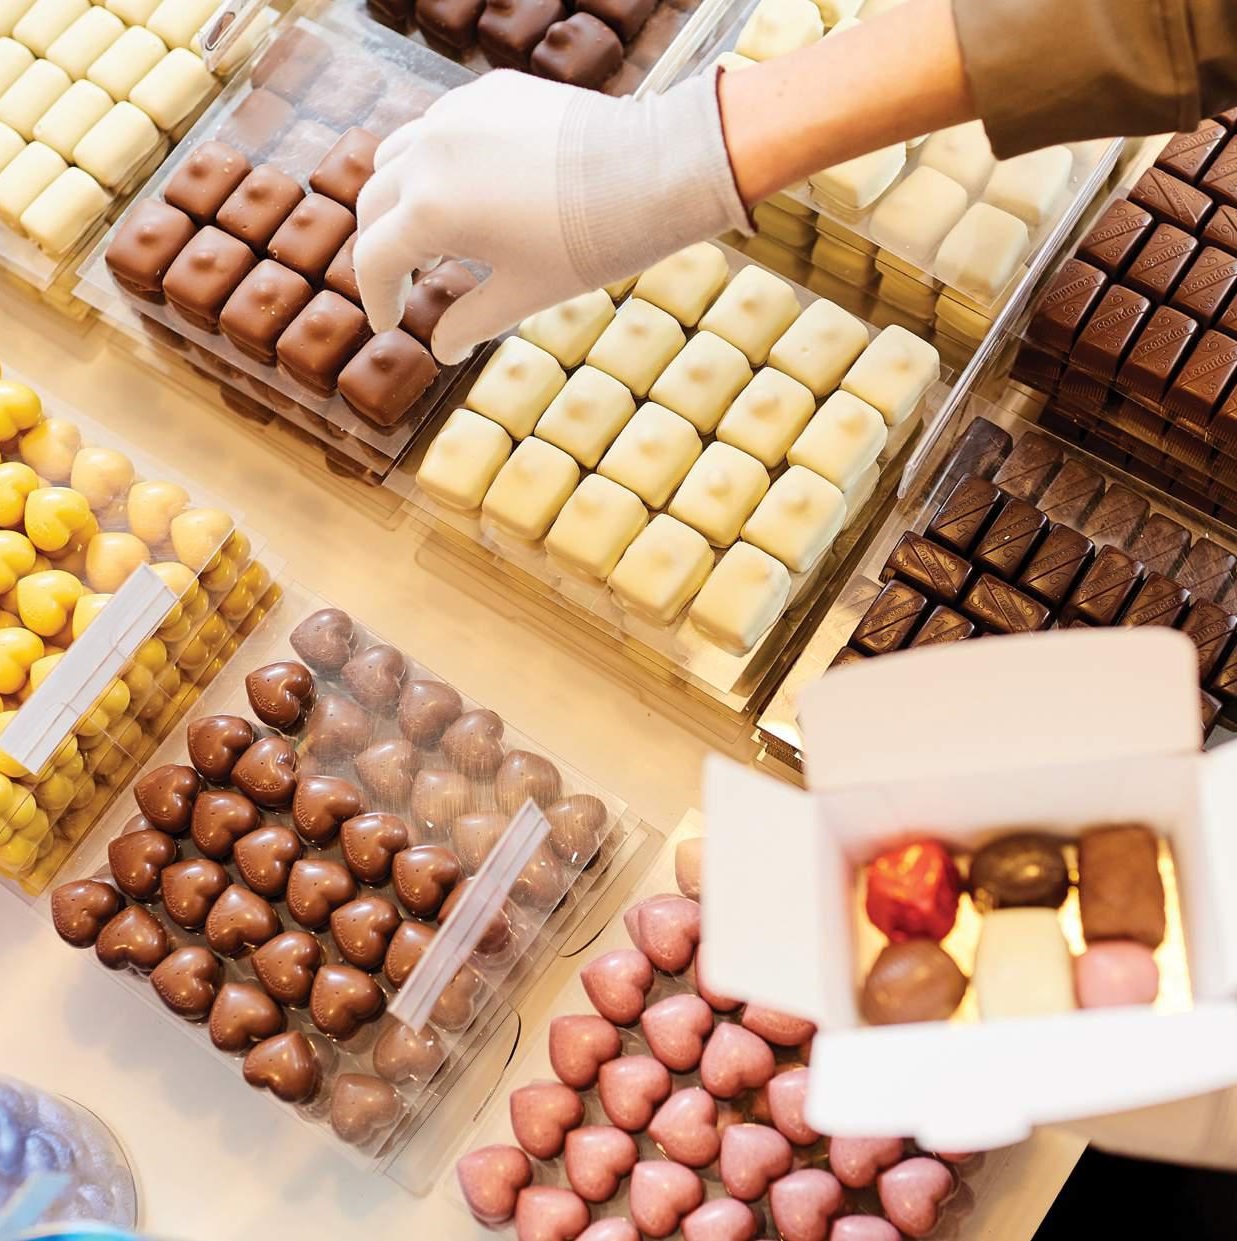 Le chocolatier belge Leonidas passe au cacao certifié